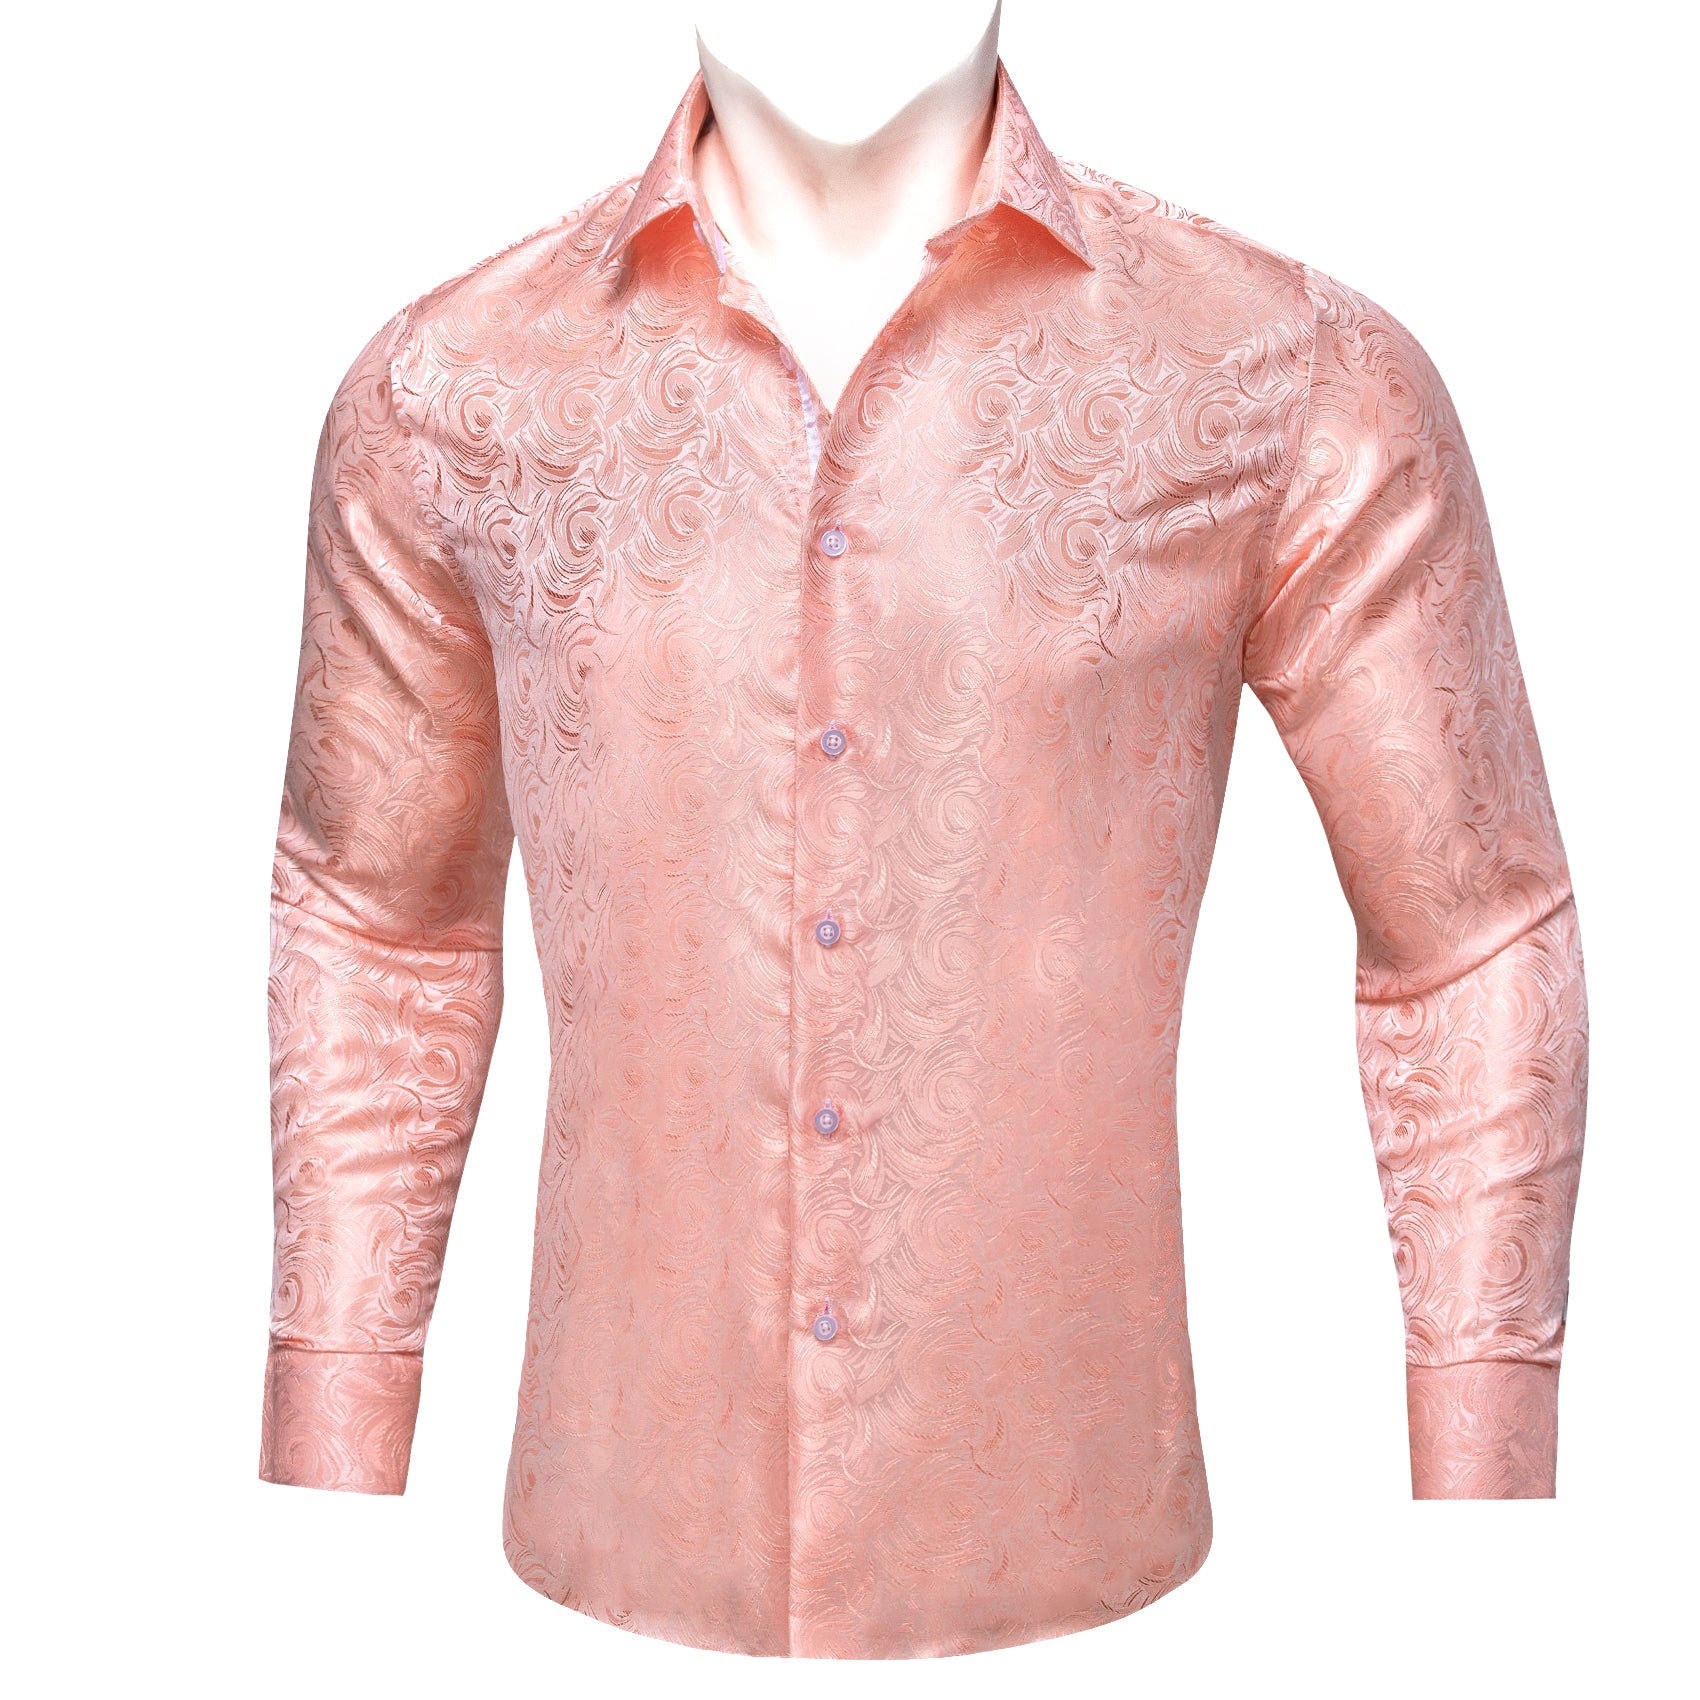 Barry.wang Pink Floral Silk Men's Shirt